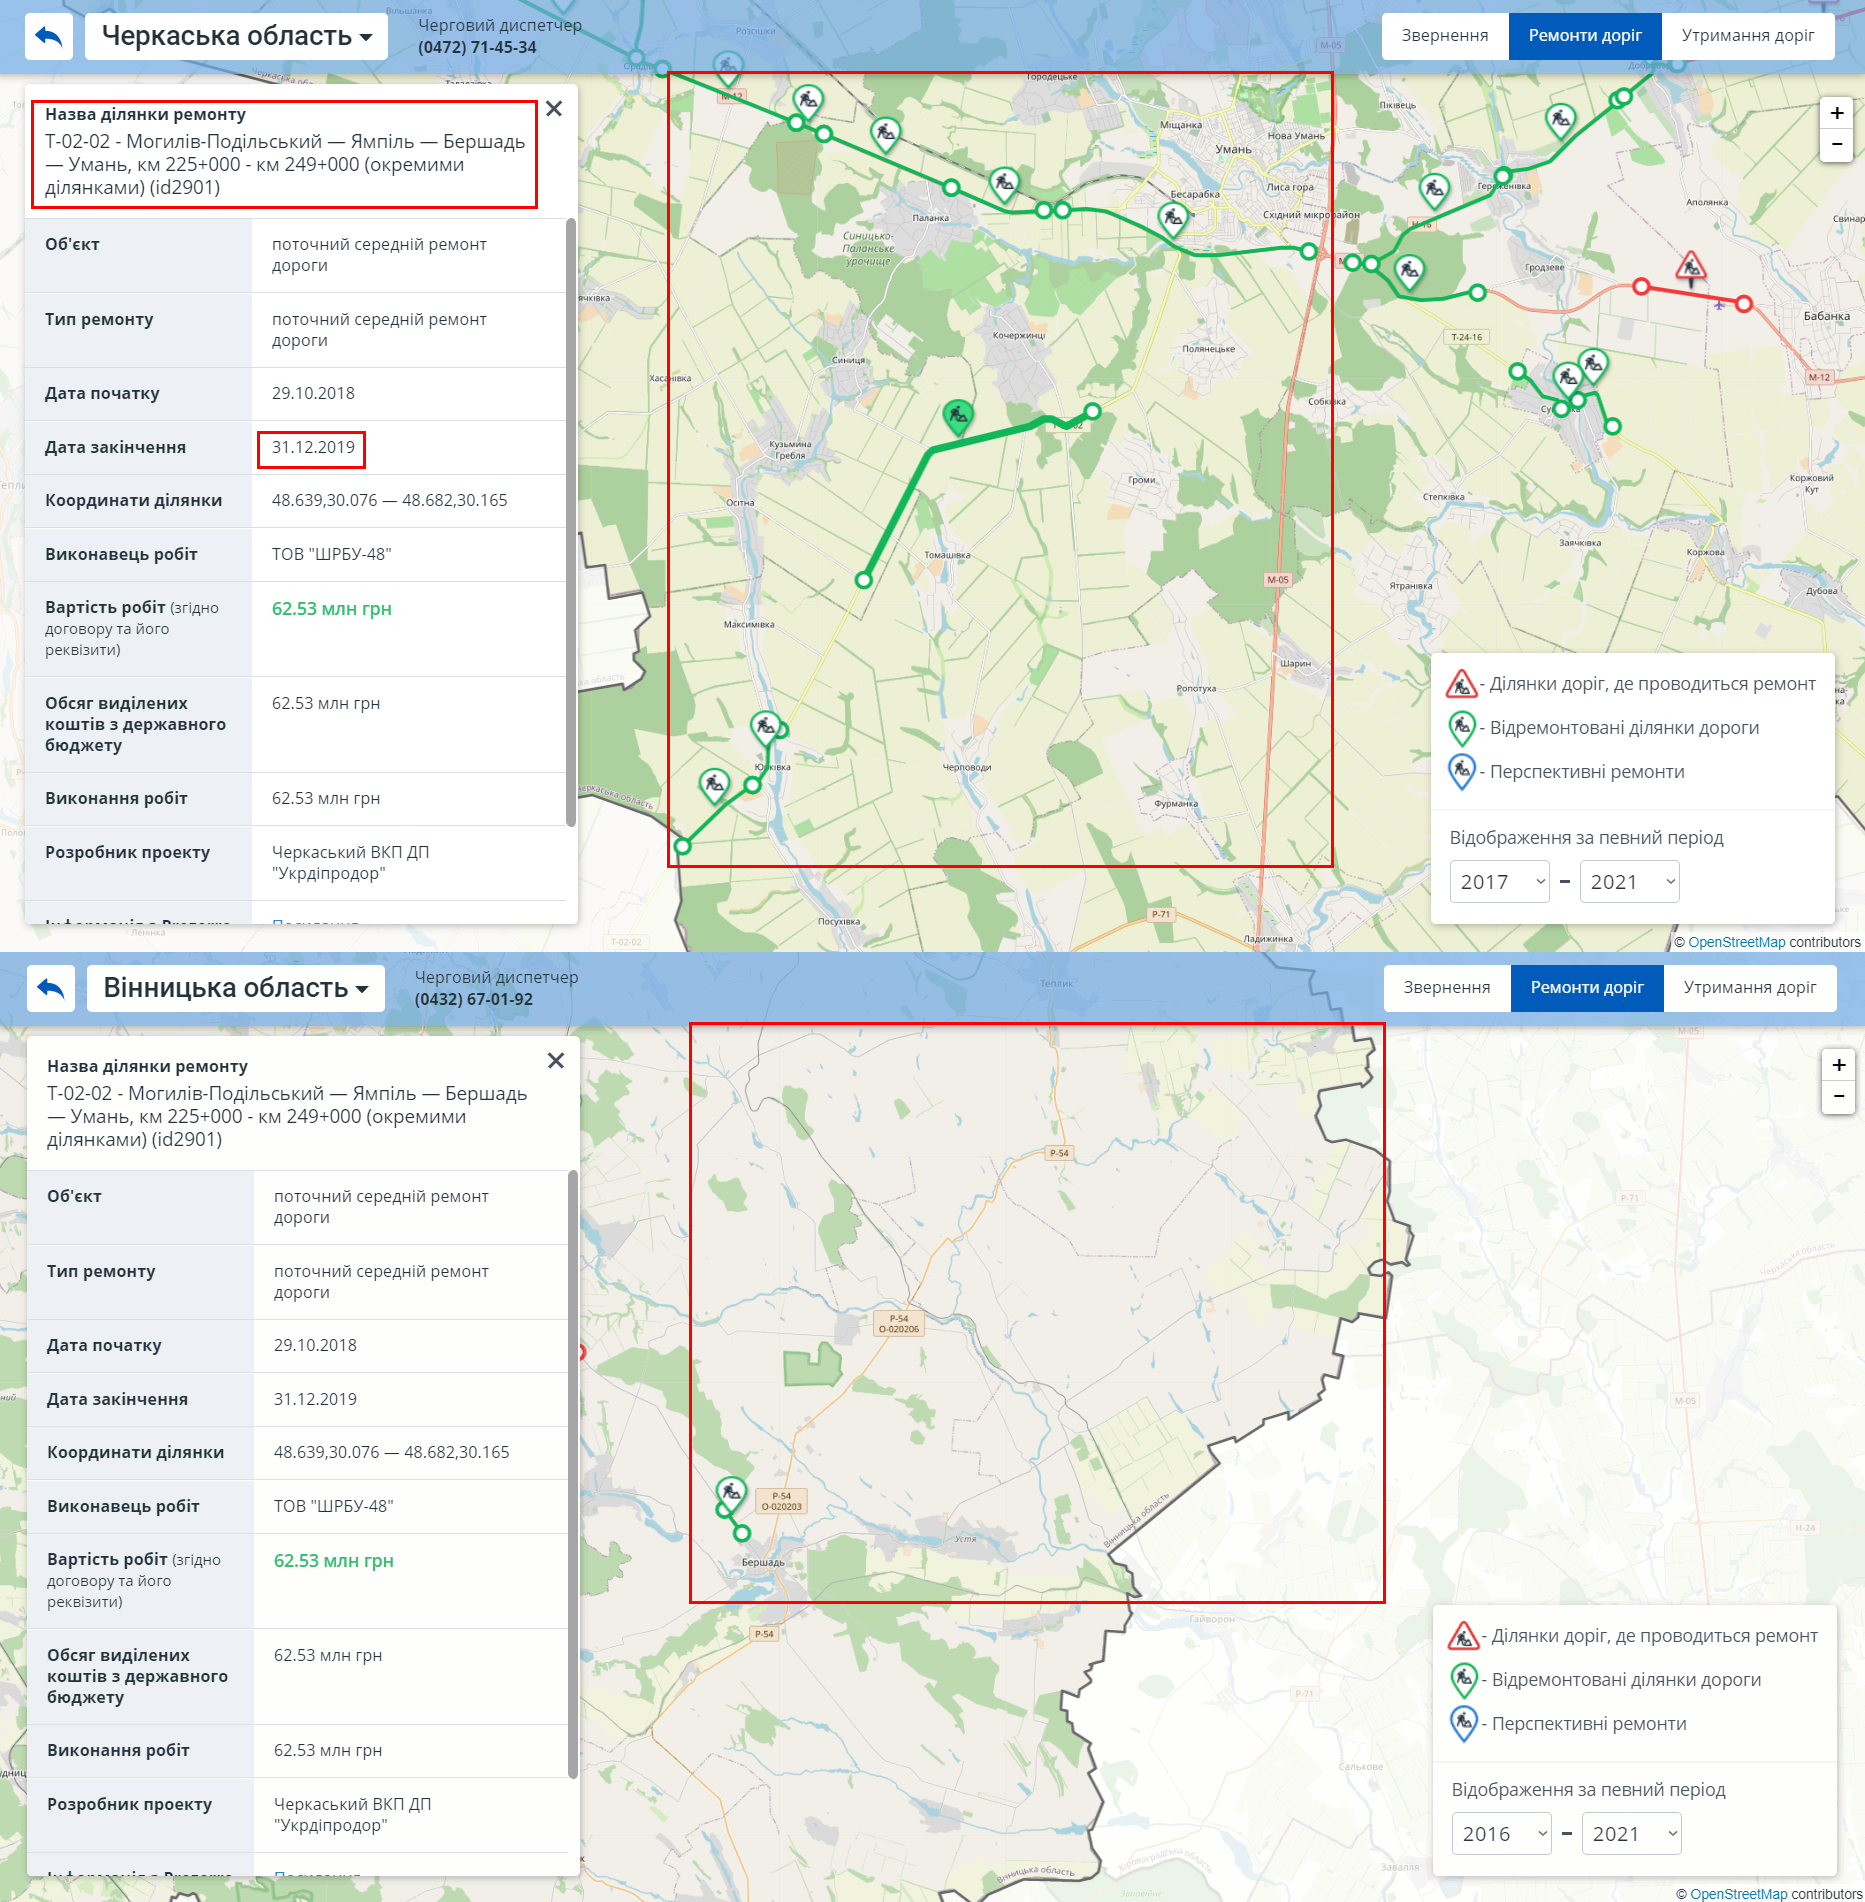 https://map.ukravtodor.org/#/cherkasy/repairs